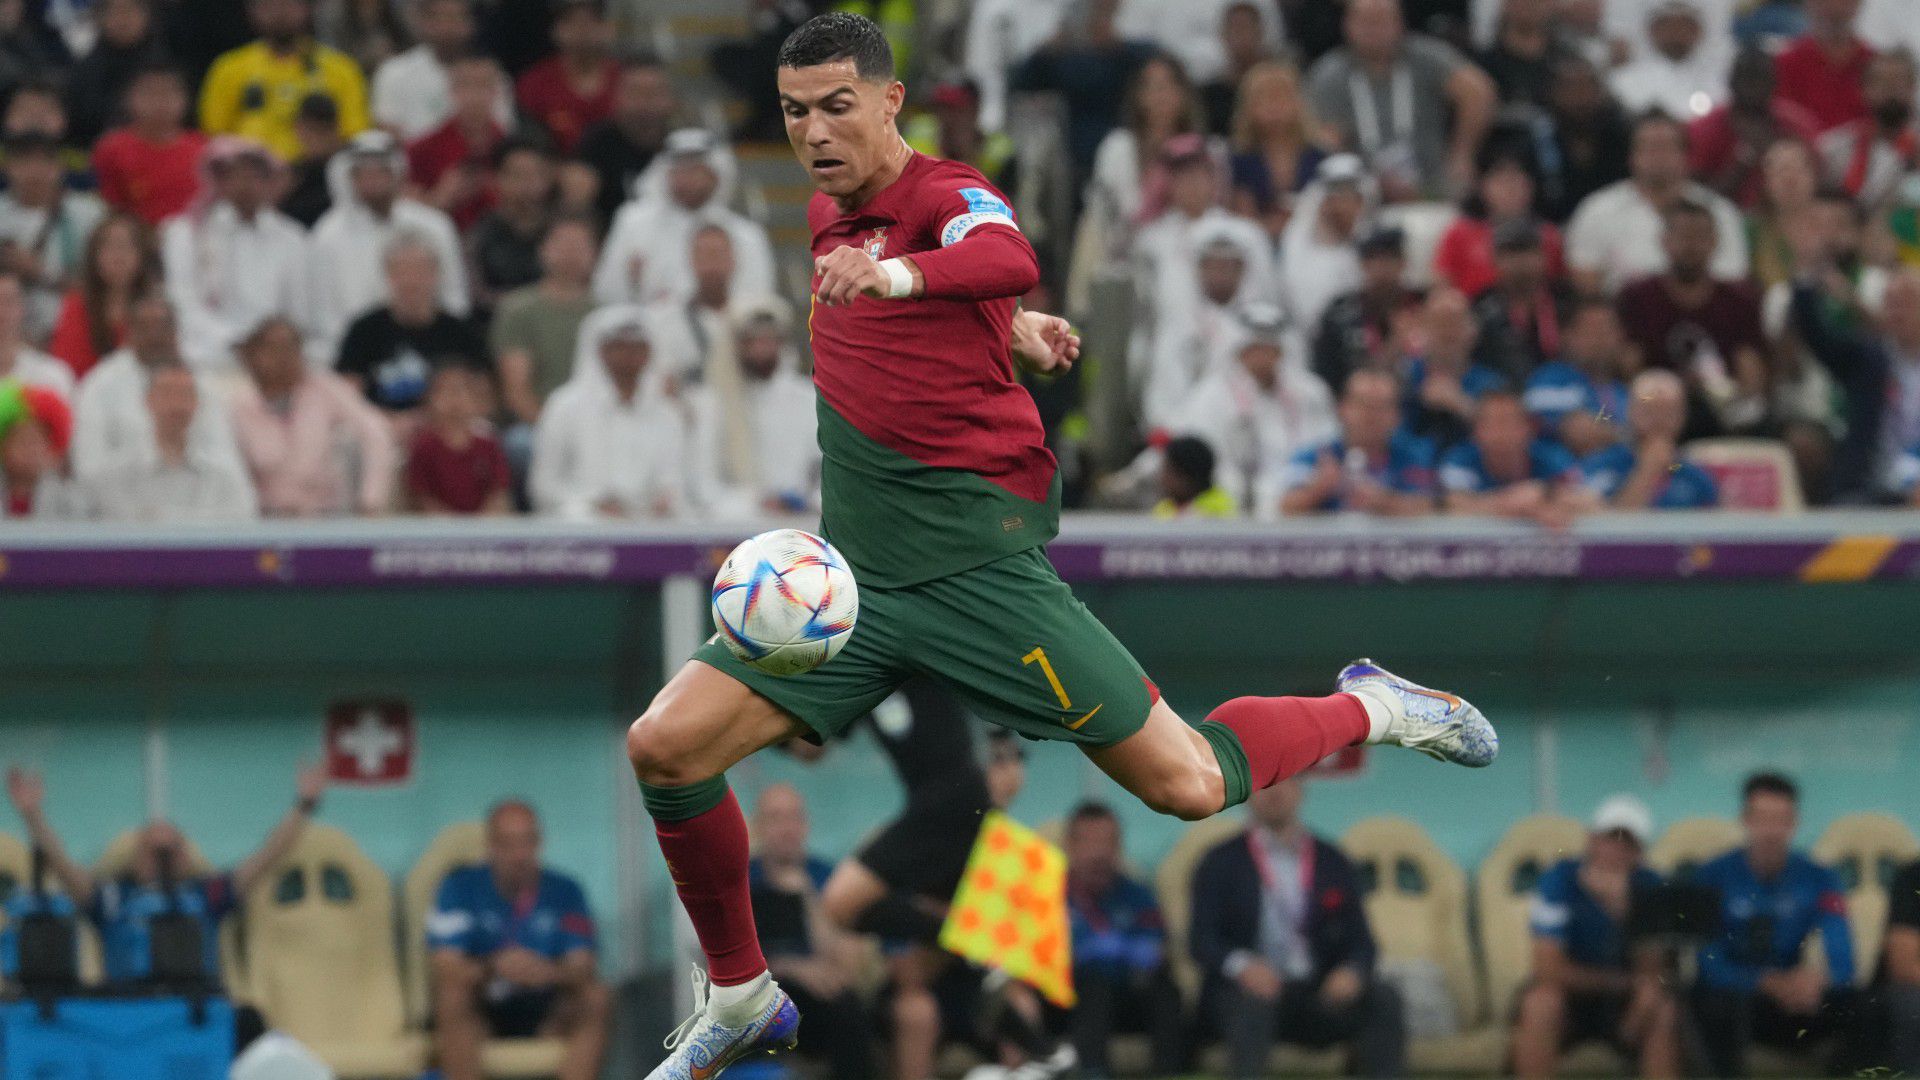 Sajtóhírek szerint a Manchester Uniteddel még a világbajnokság előtt szerződést bontó Cristiano Ronaldo Szaúd-Arábiában folytathatja.